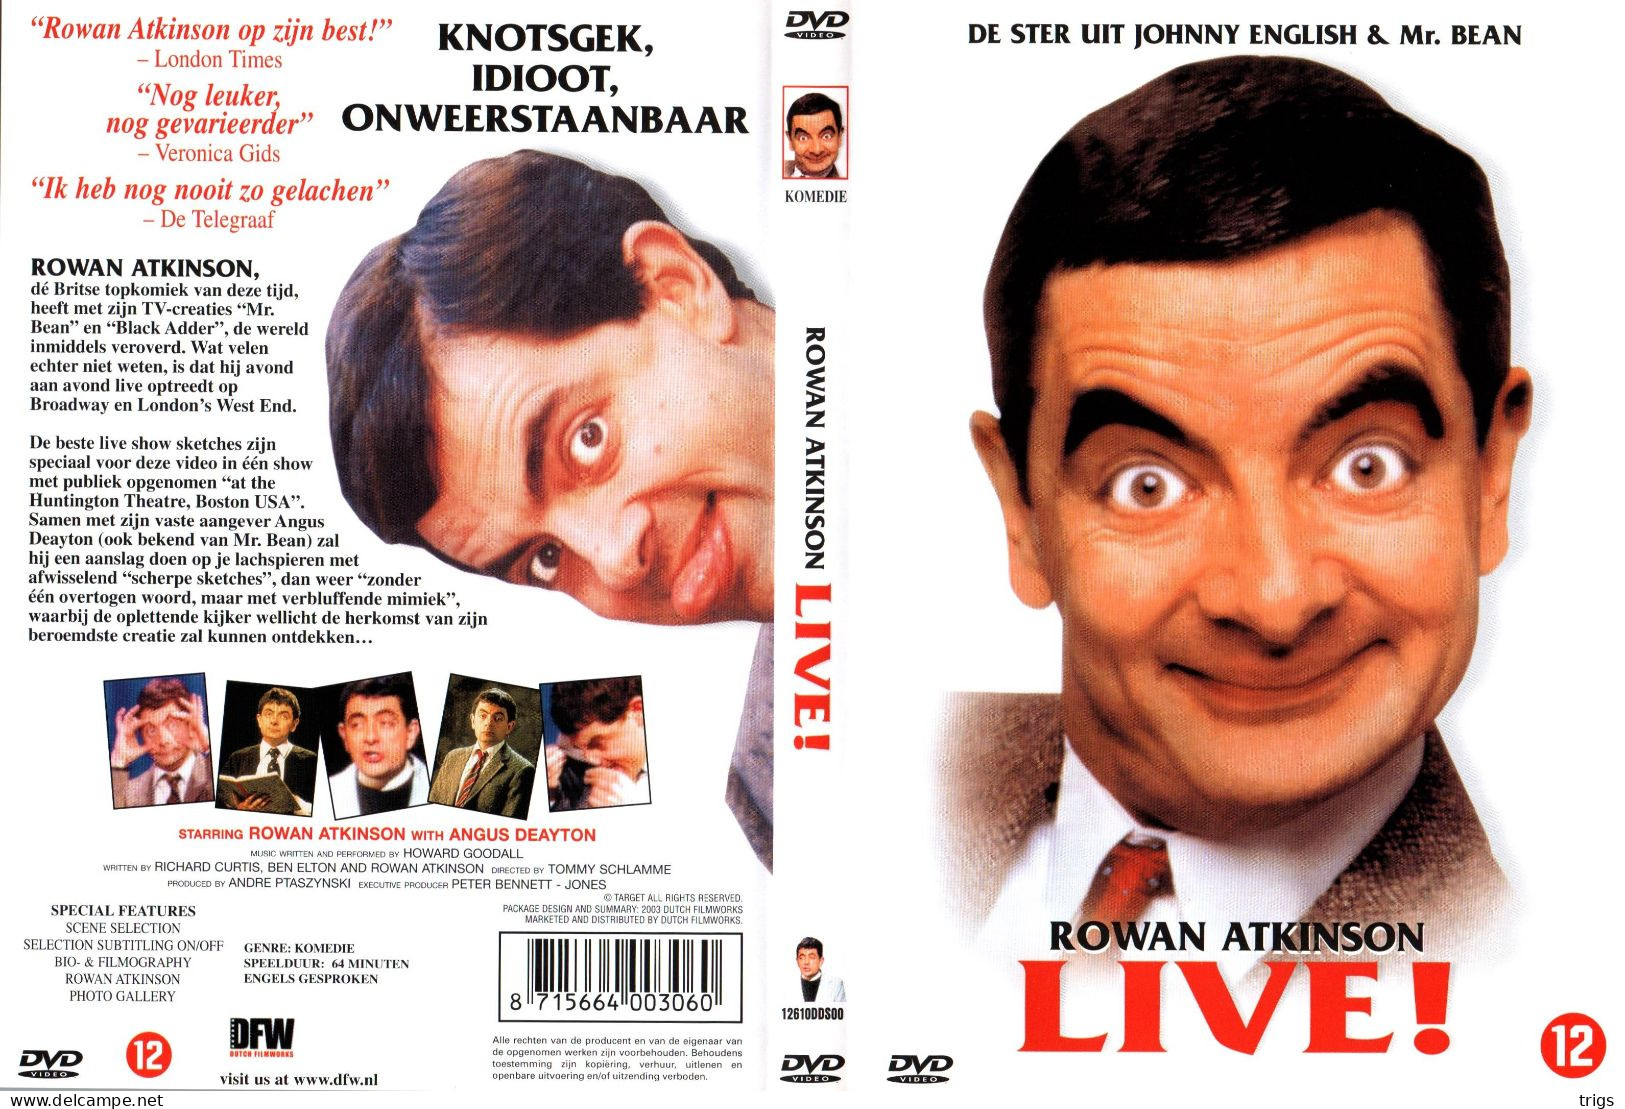 DVD - Rowan Atkinson Live! - Comédie